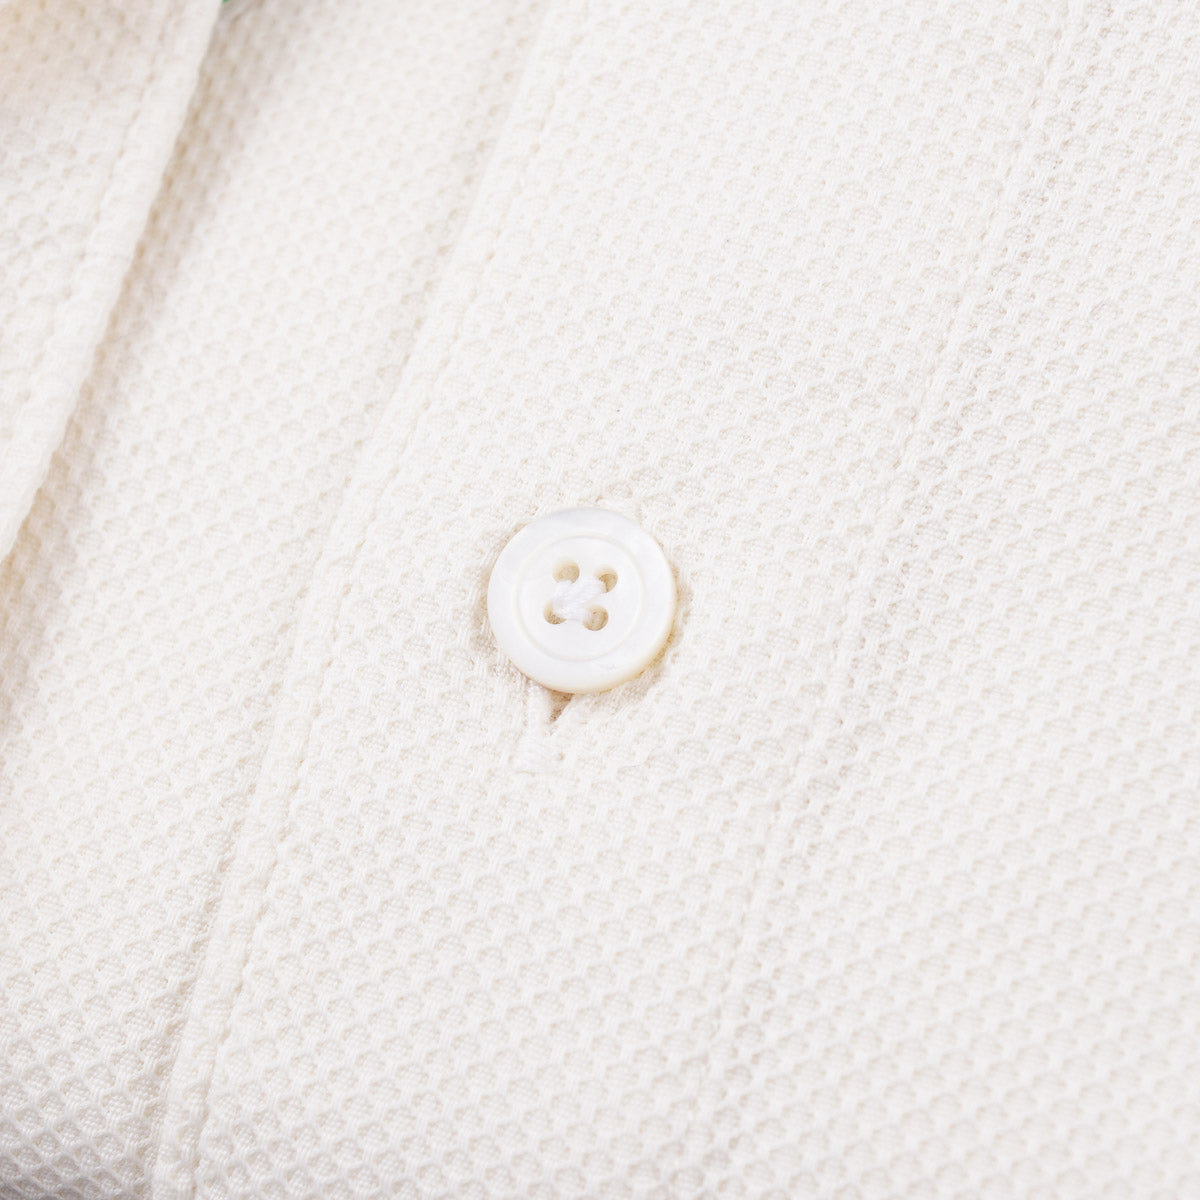 Finamore Extra-Slim Cotton Dress Shirt - Top Shelf Apparel